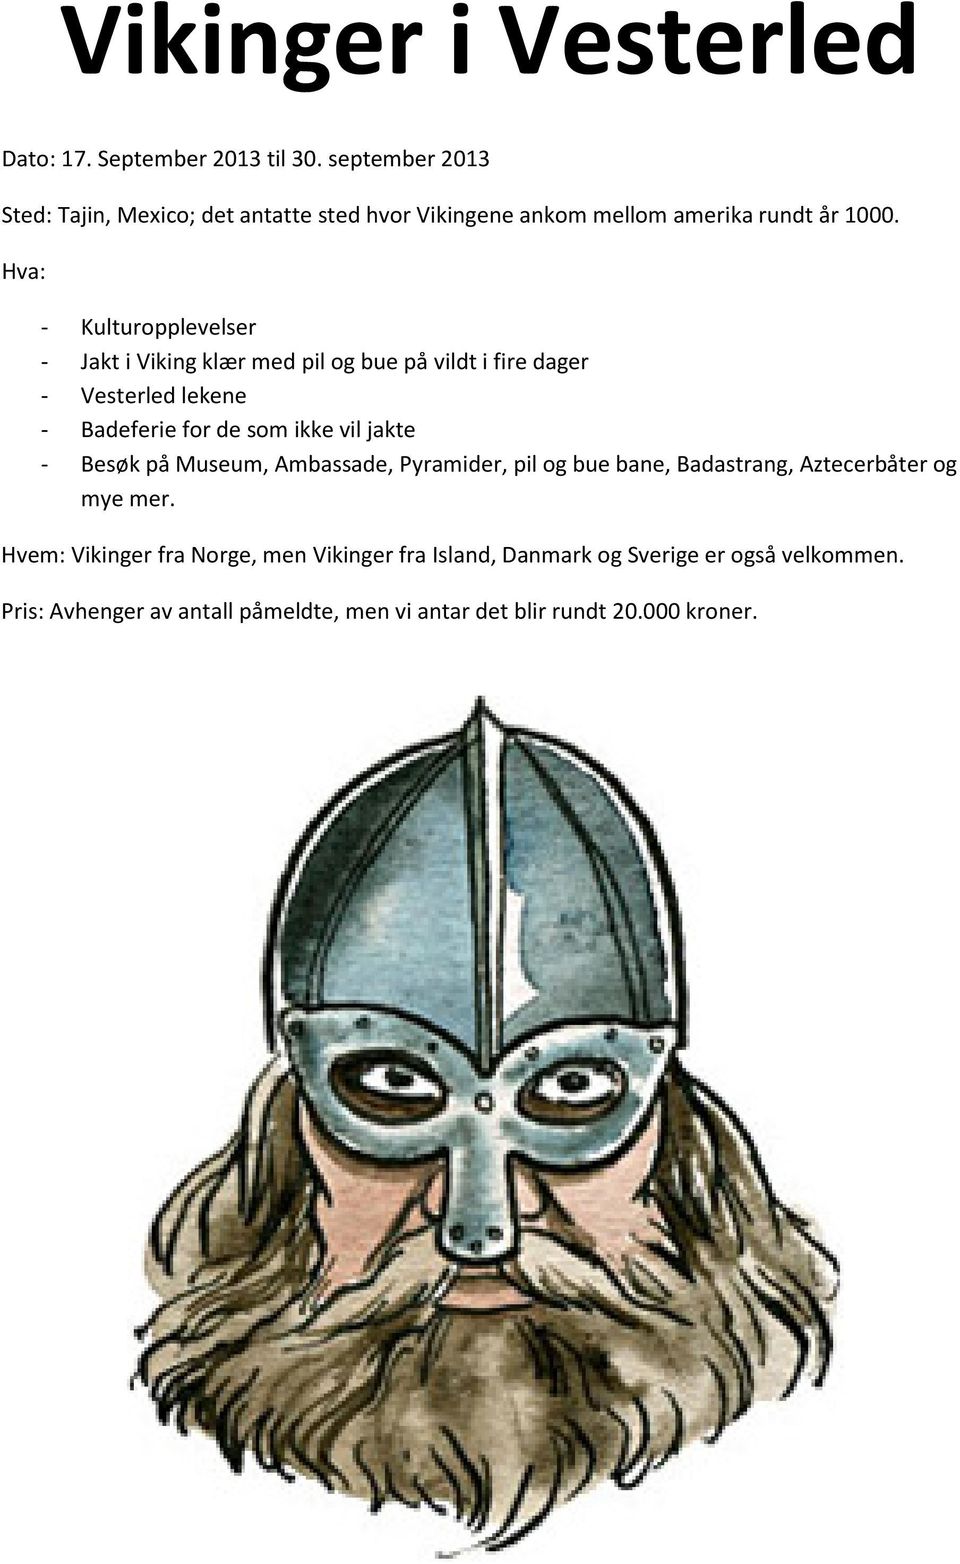 Hva: - Kulturopplevelser - Jakt i Viking klær med pil og bue på vildt i fire dager - Vesterled lekene - Badeferie for de som ikke vil jakte